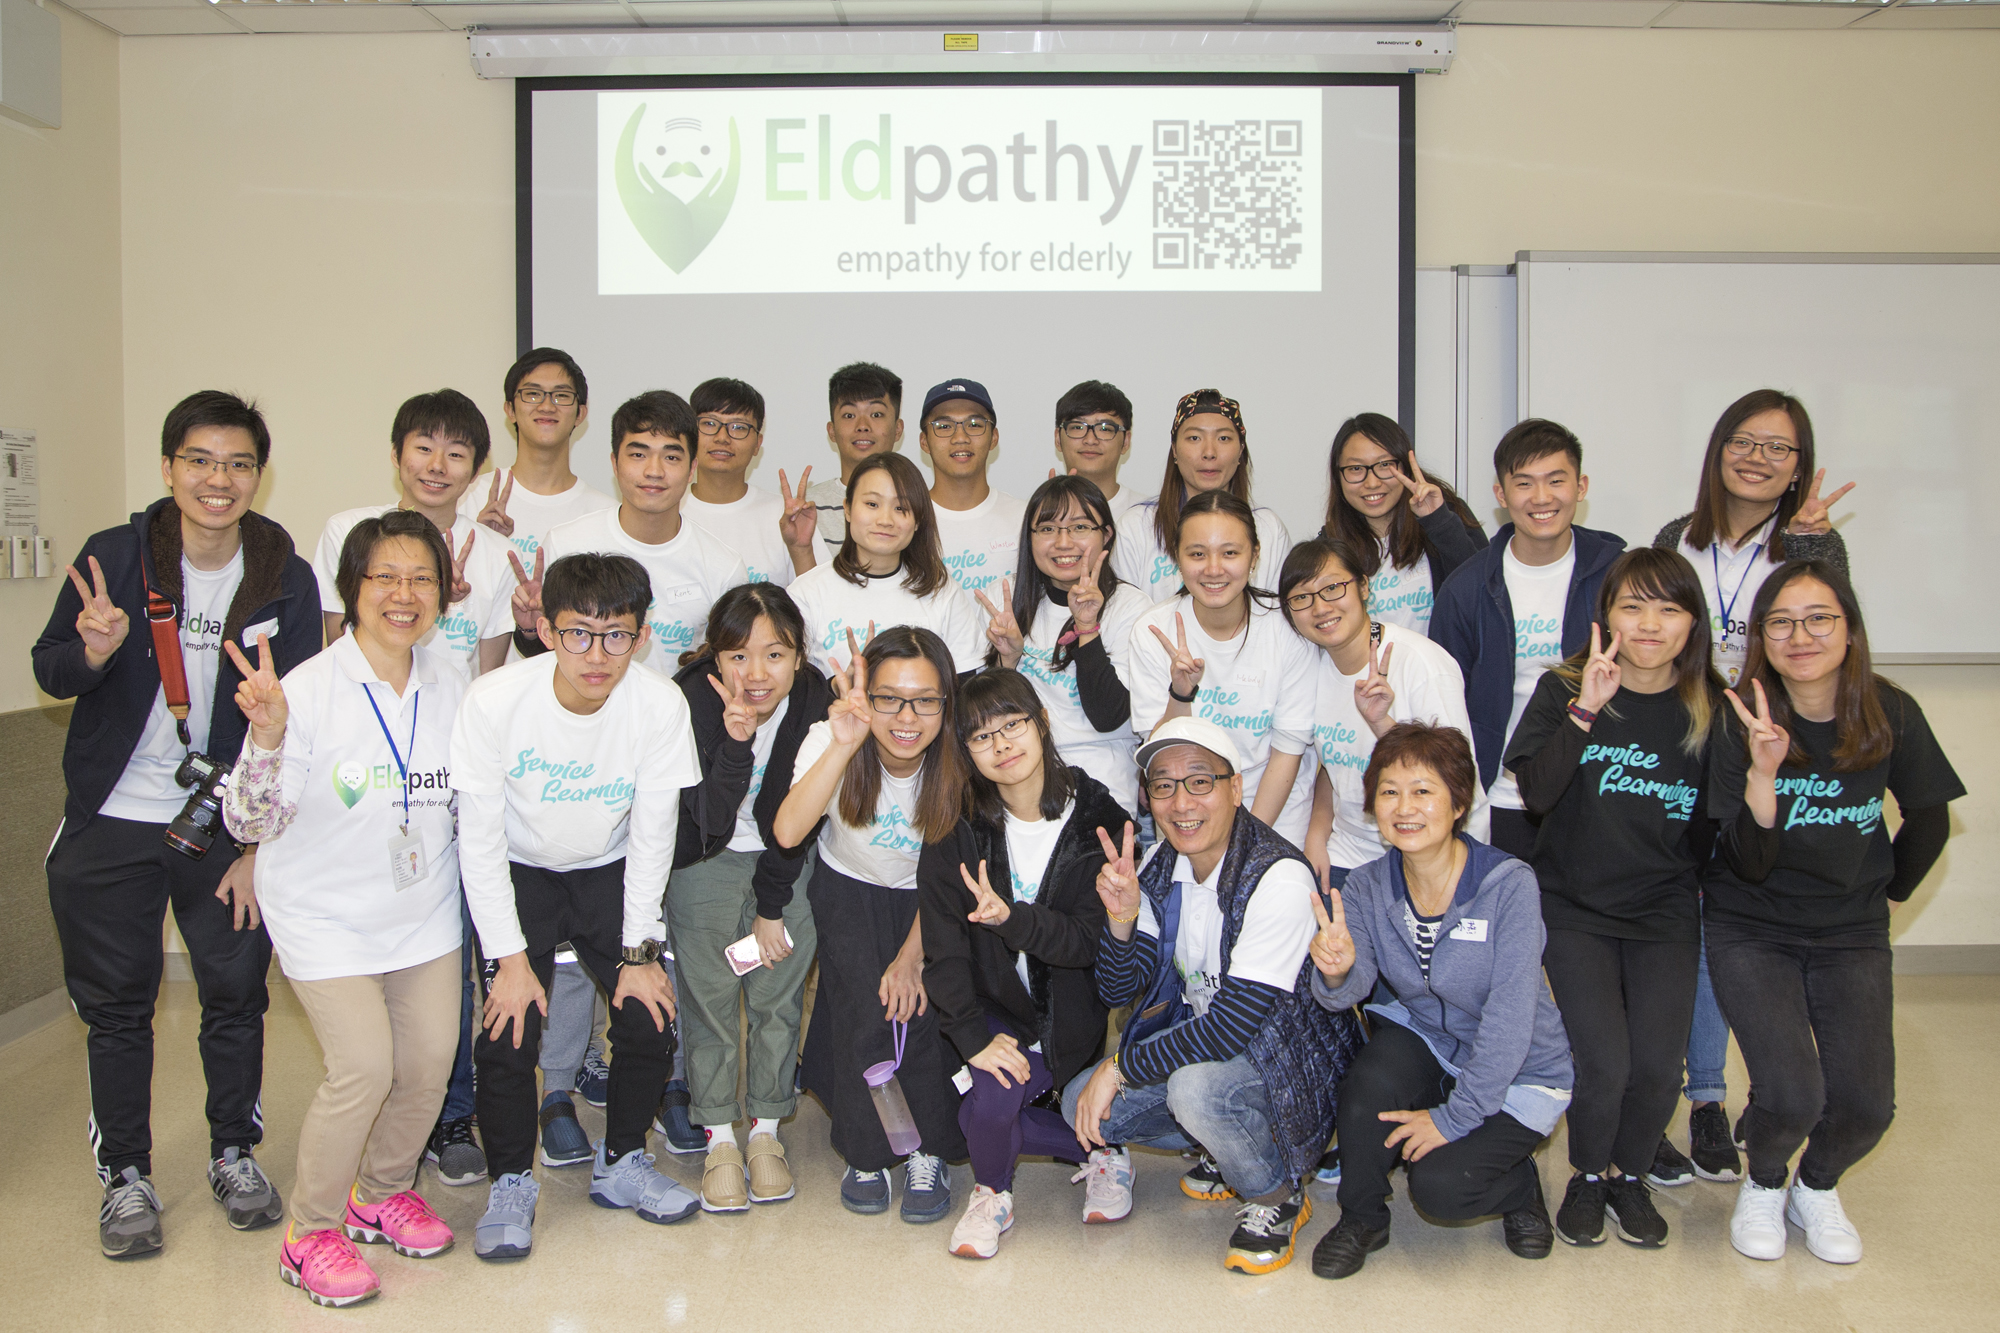 Eldpathy鼓励同学身体力行参加不同种类的长者活动，了解长者的需要，从而学习互相沟通和尊重。